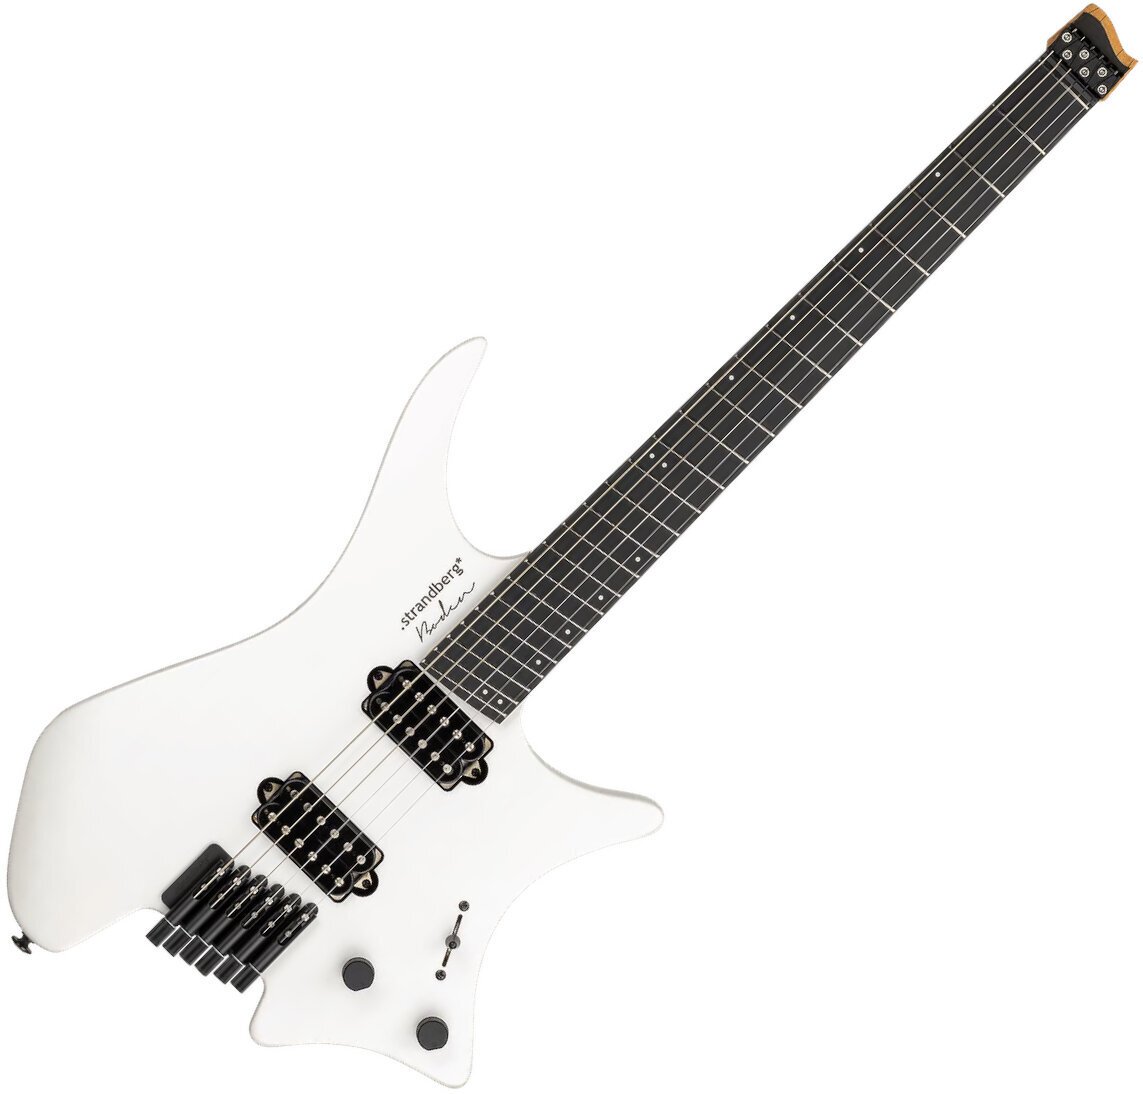 Headless gitár Strandberg Boden Metal NX 6 White Granite